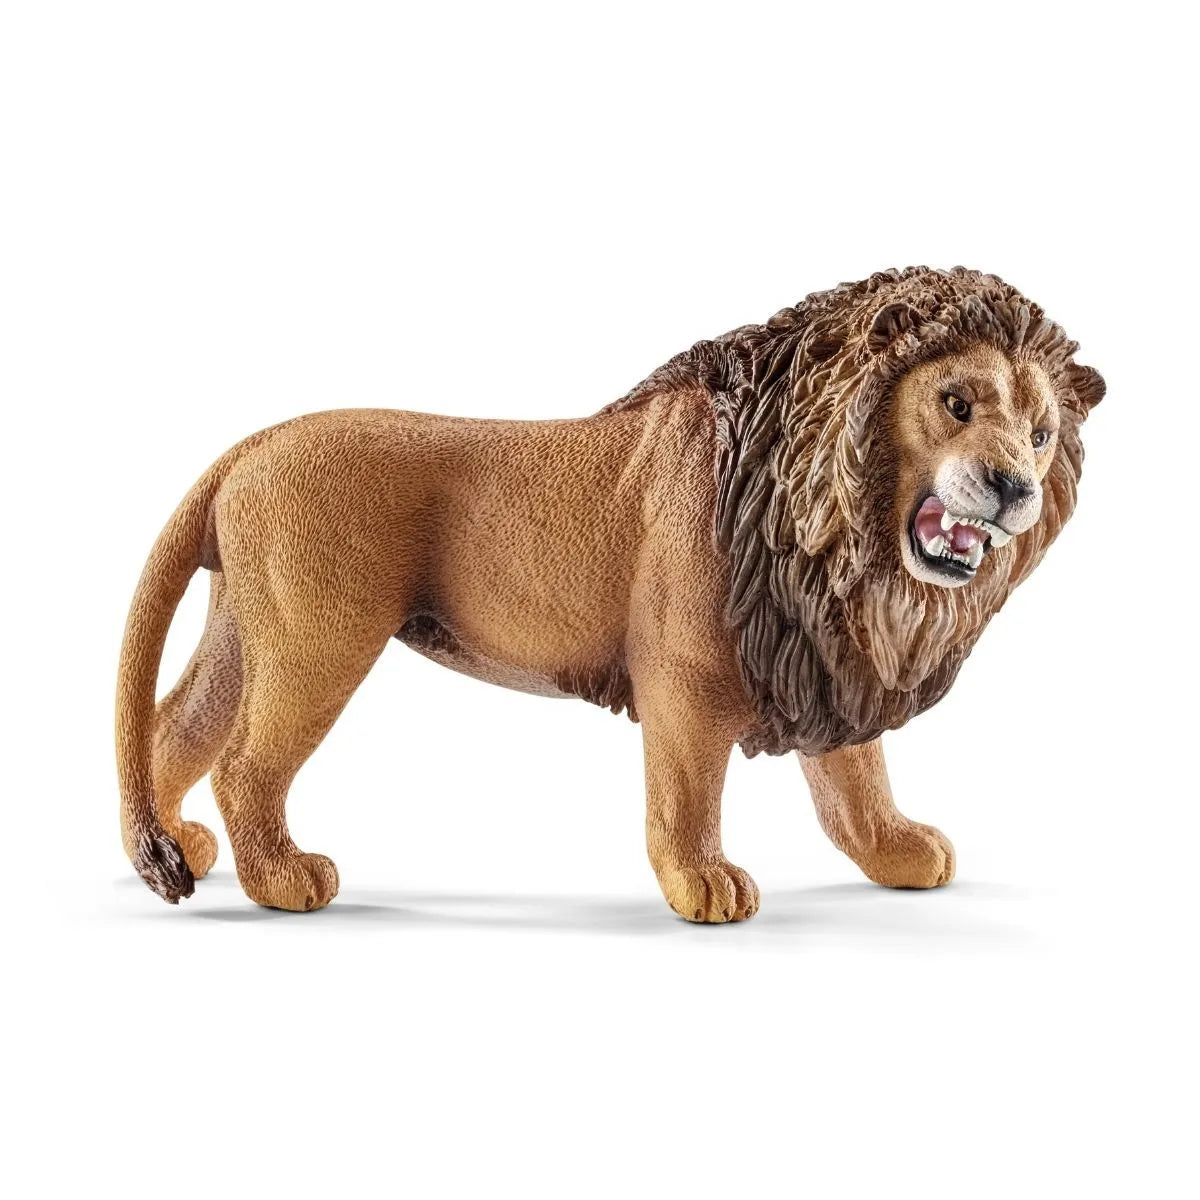 Schleich® 14726, Lion, roaring